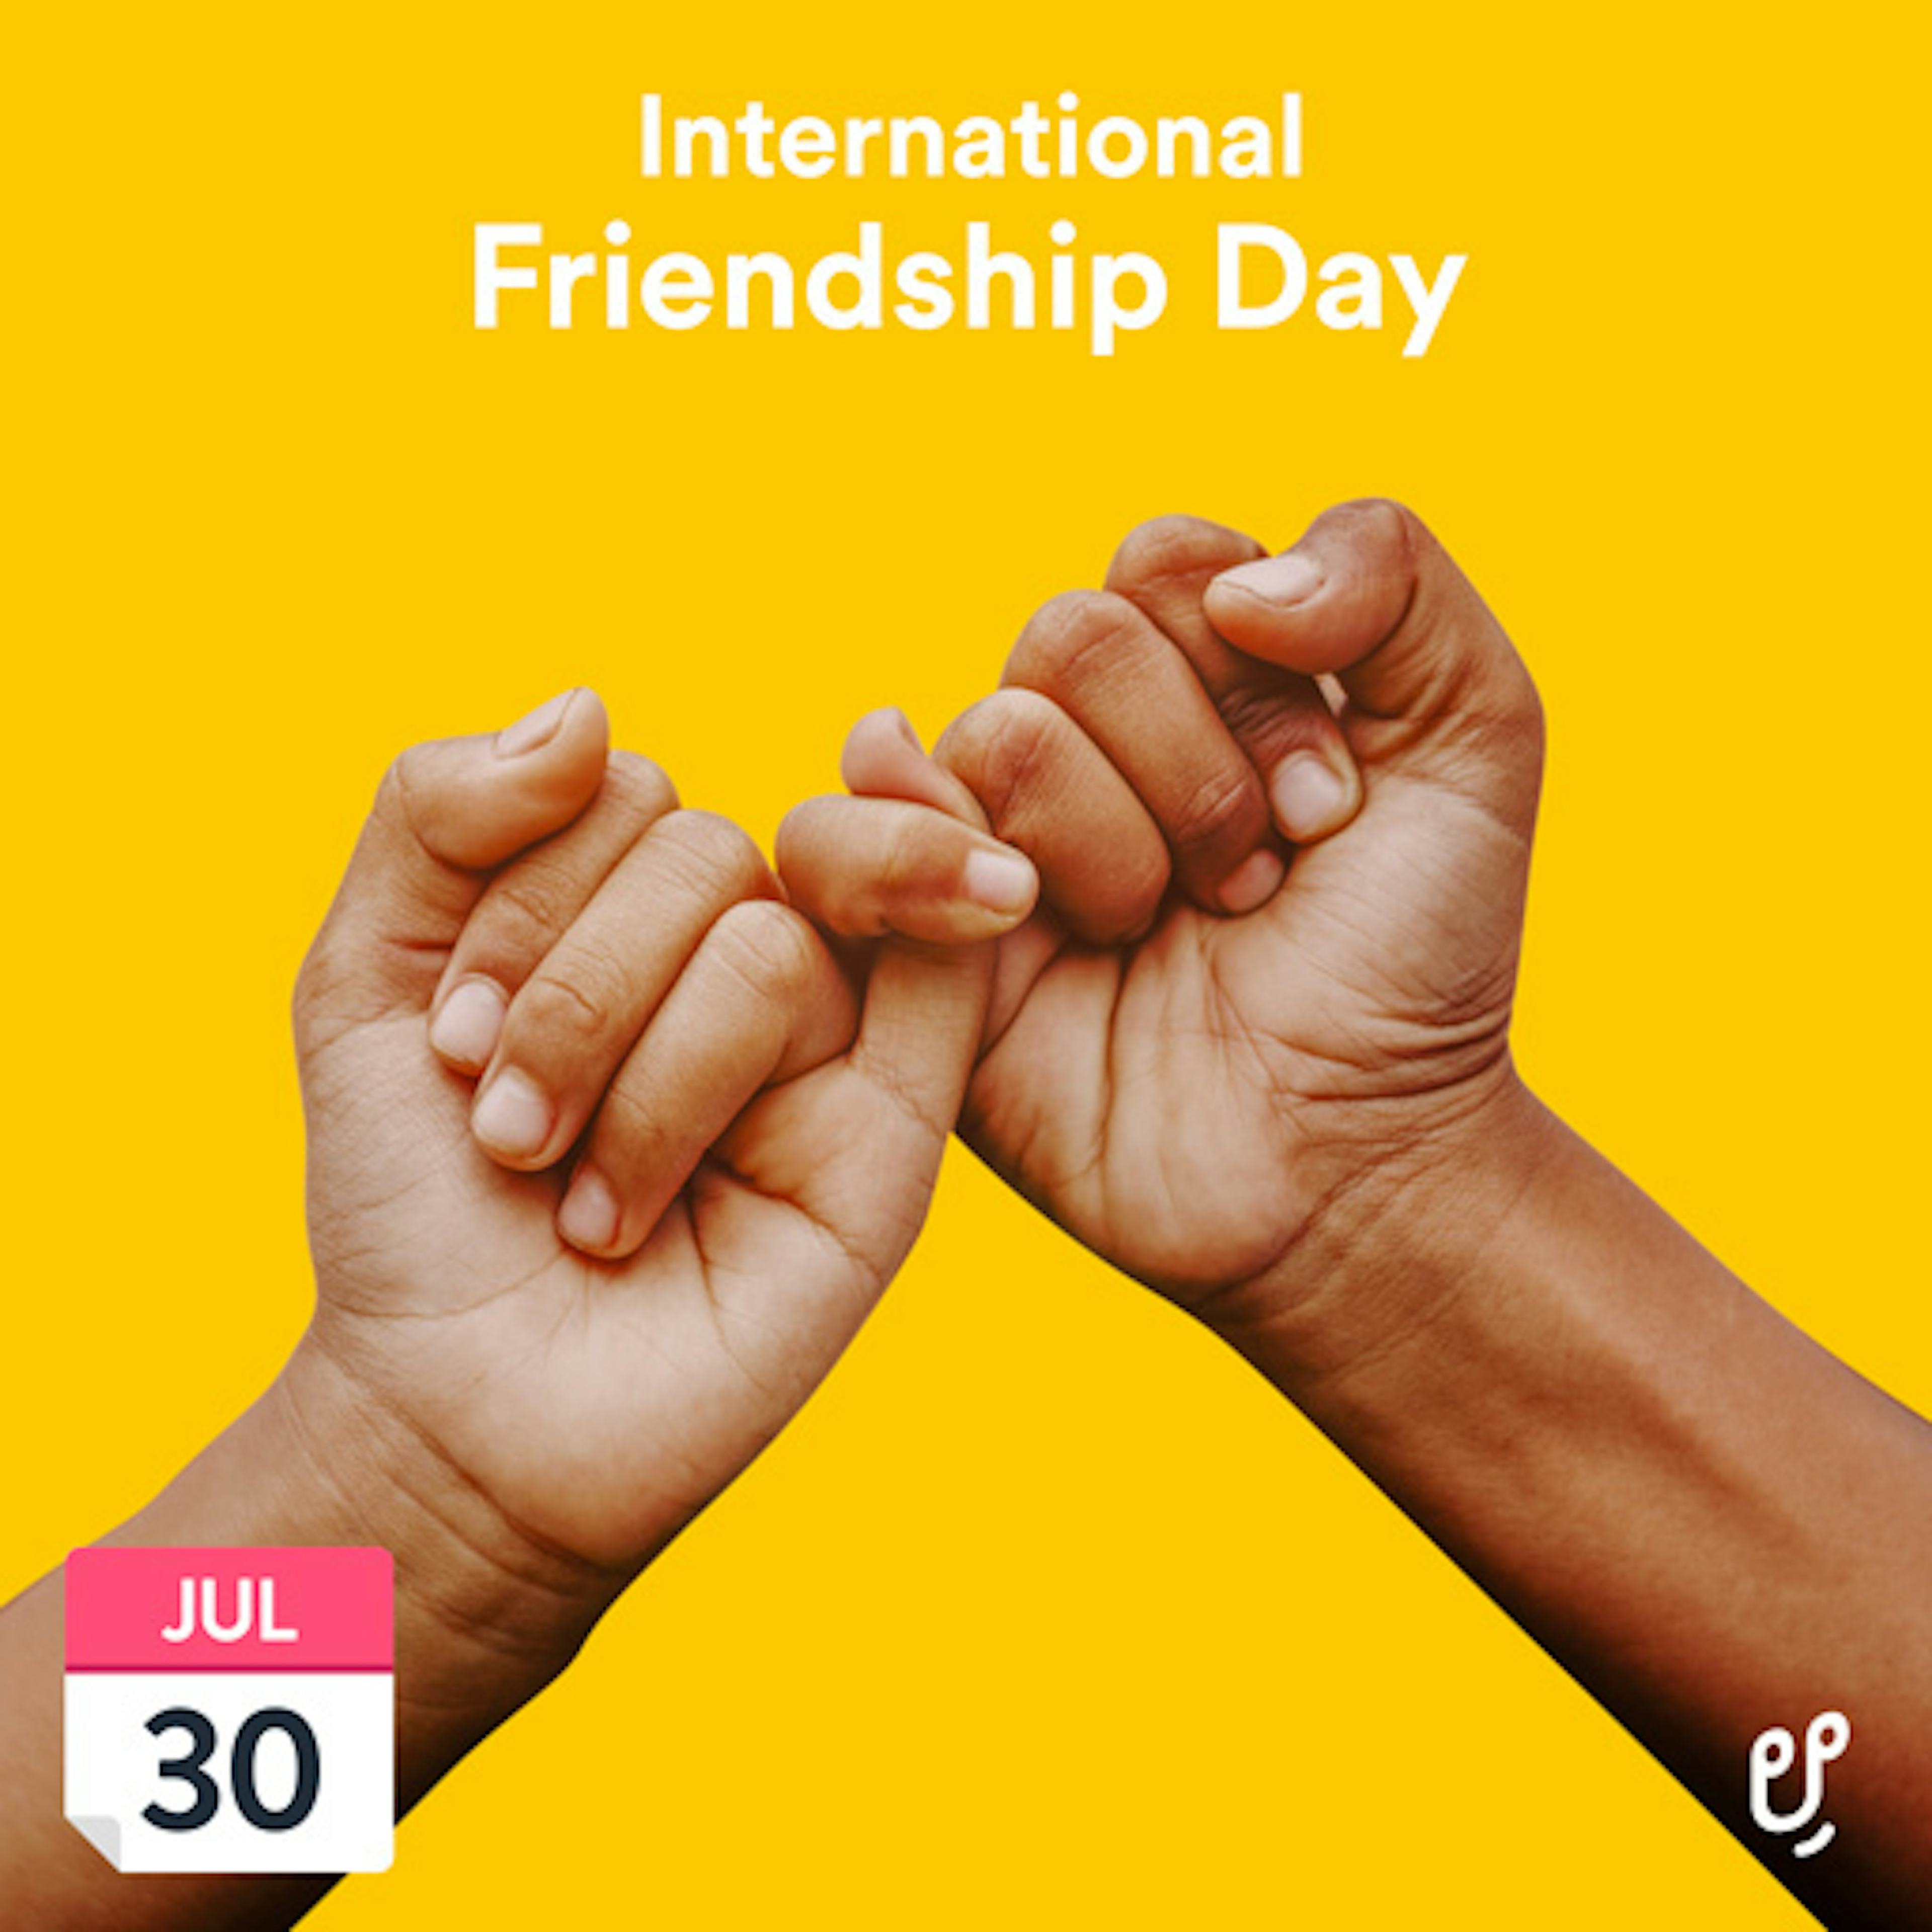 International Friendship Day artwork